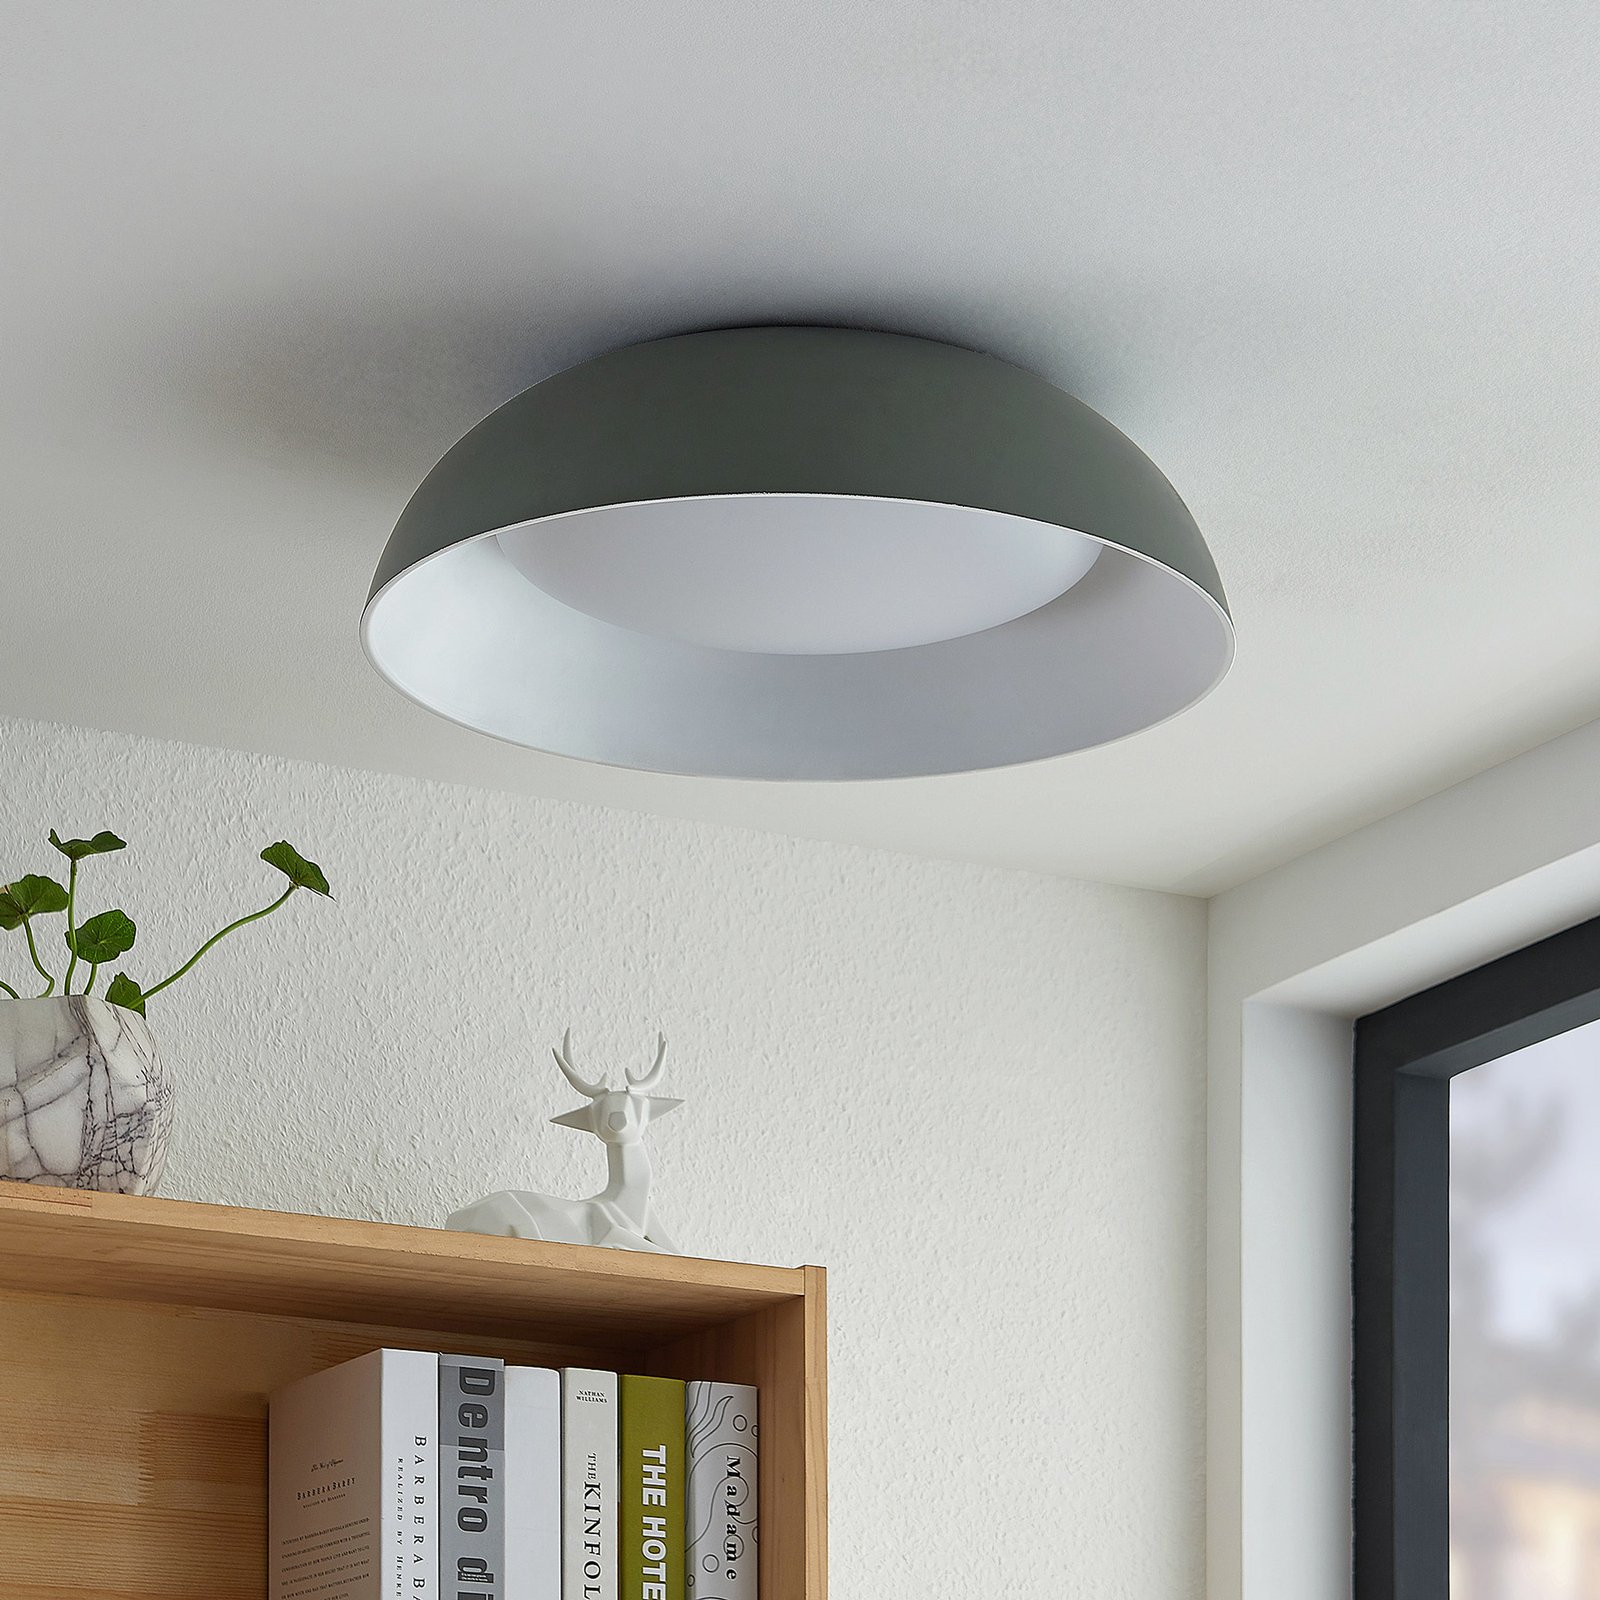 Lindby Juliven LED ceiling light, grey